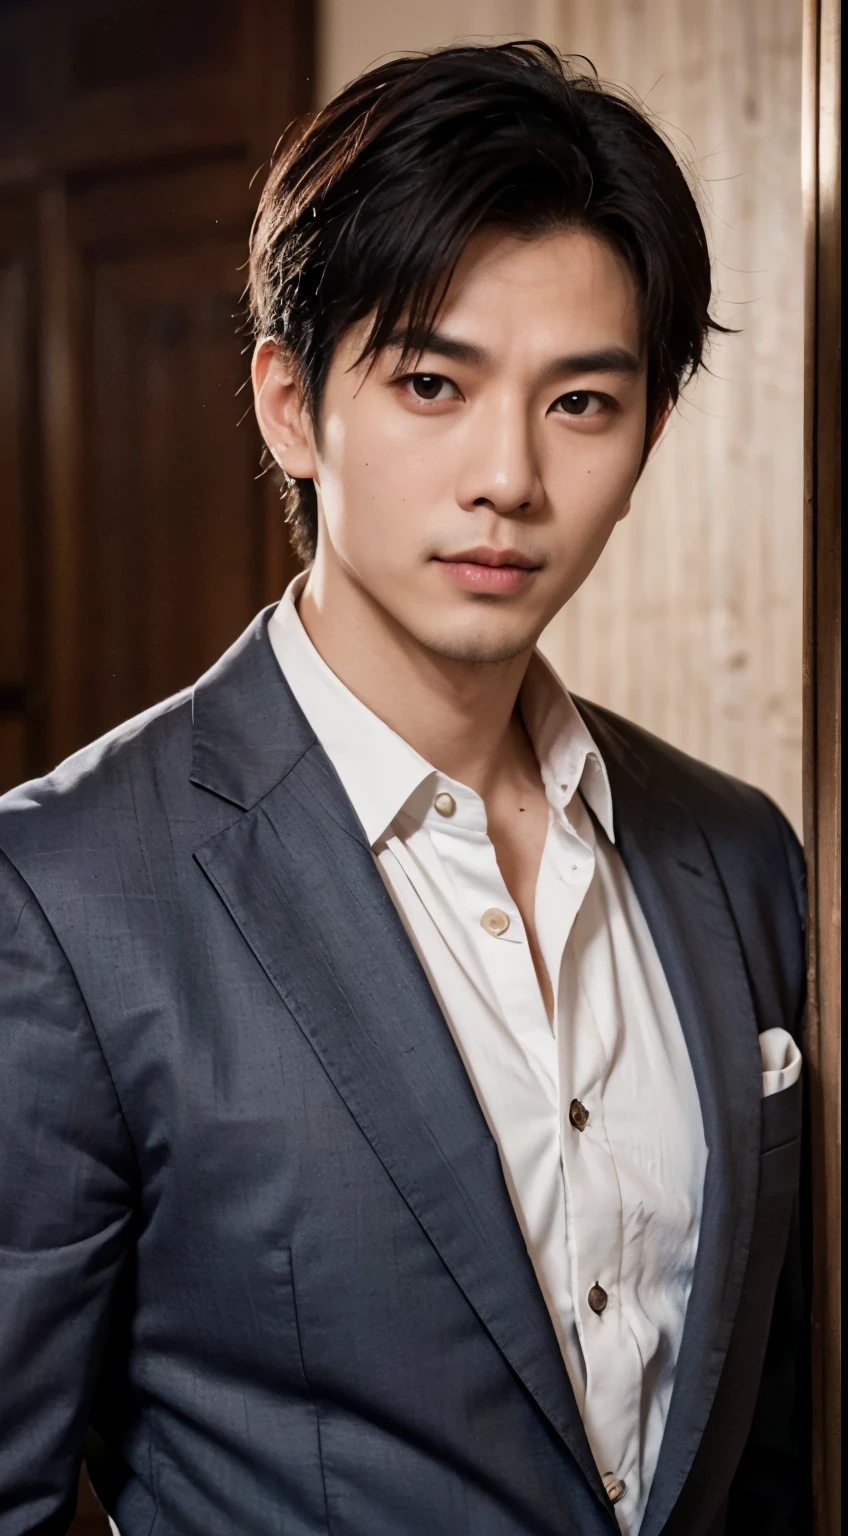 一個英俊的亞洲男人的肖像 25 歲圓臉電影外觀, 胸部上方, 穿西裝